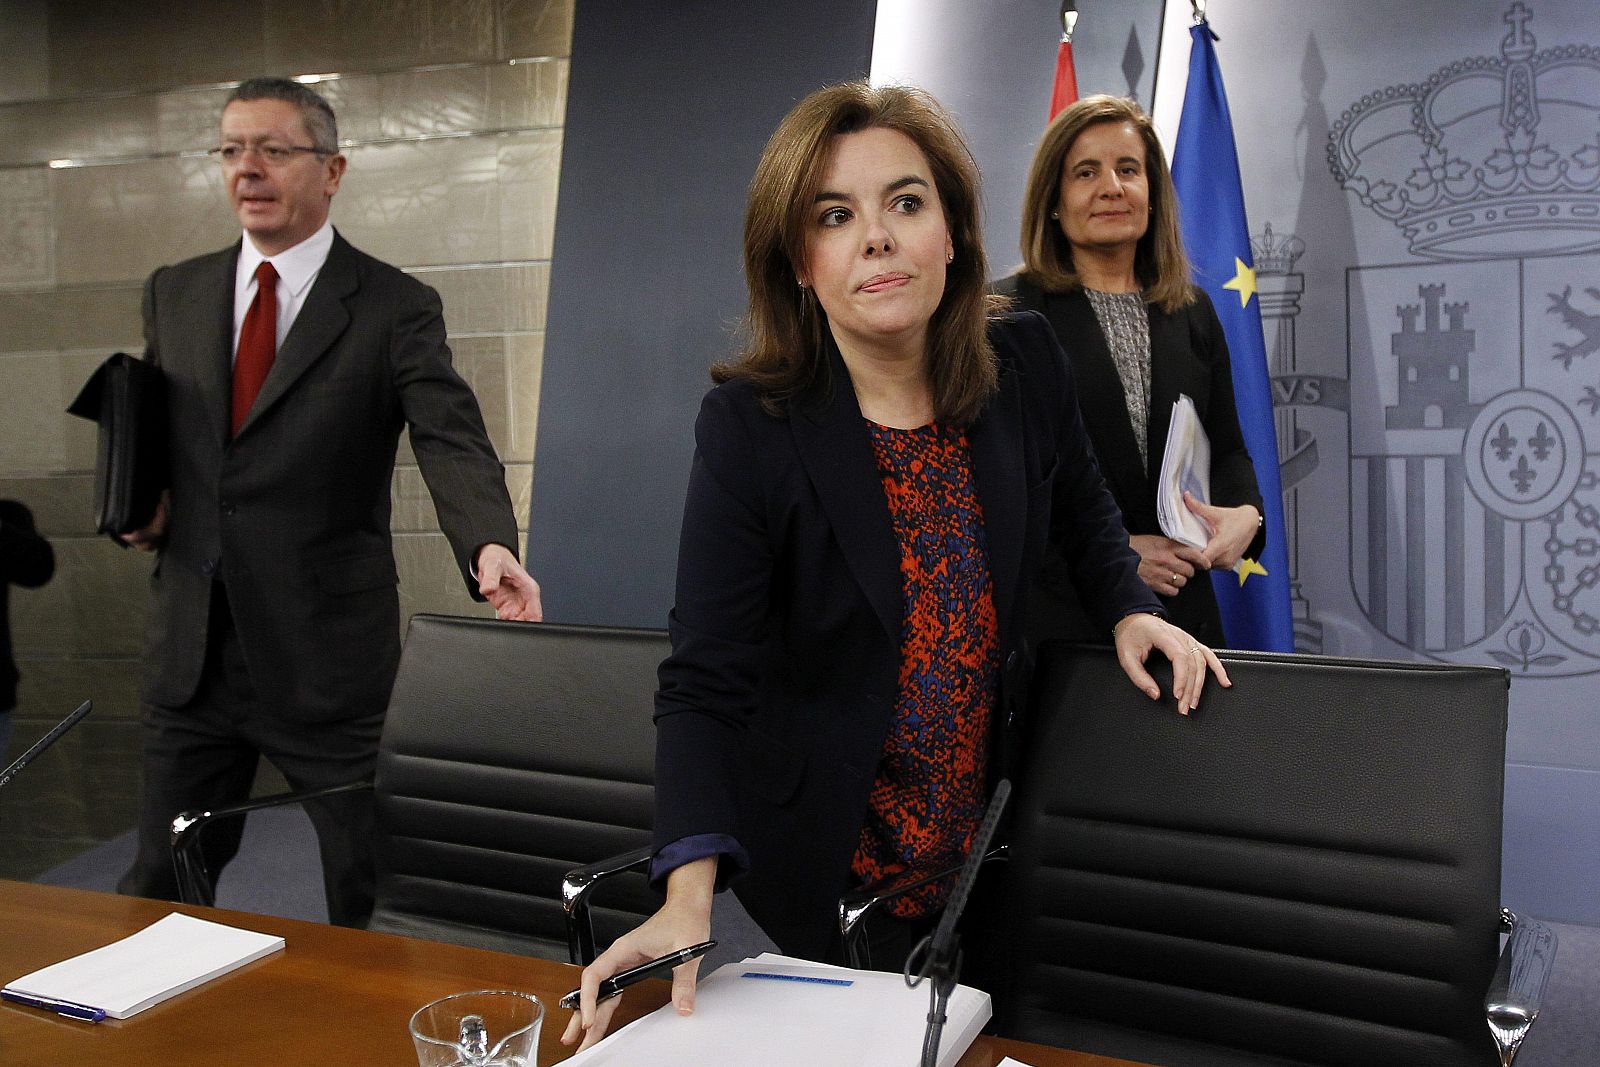 La vicepresidenta del Gobierno, Soraya Sáenz de Santamaría, junto a la ministra de Empleo, Fátima Báñez, y el ministro de Justicia, Alberto Ruiz-Gallardón